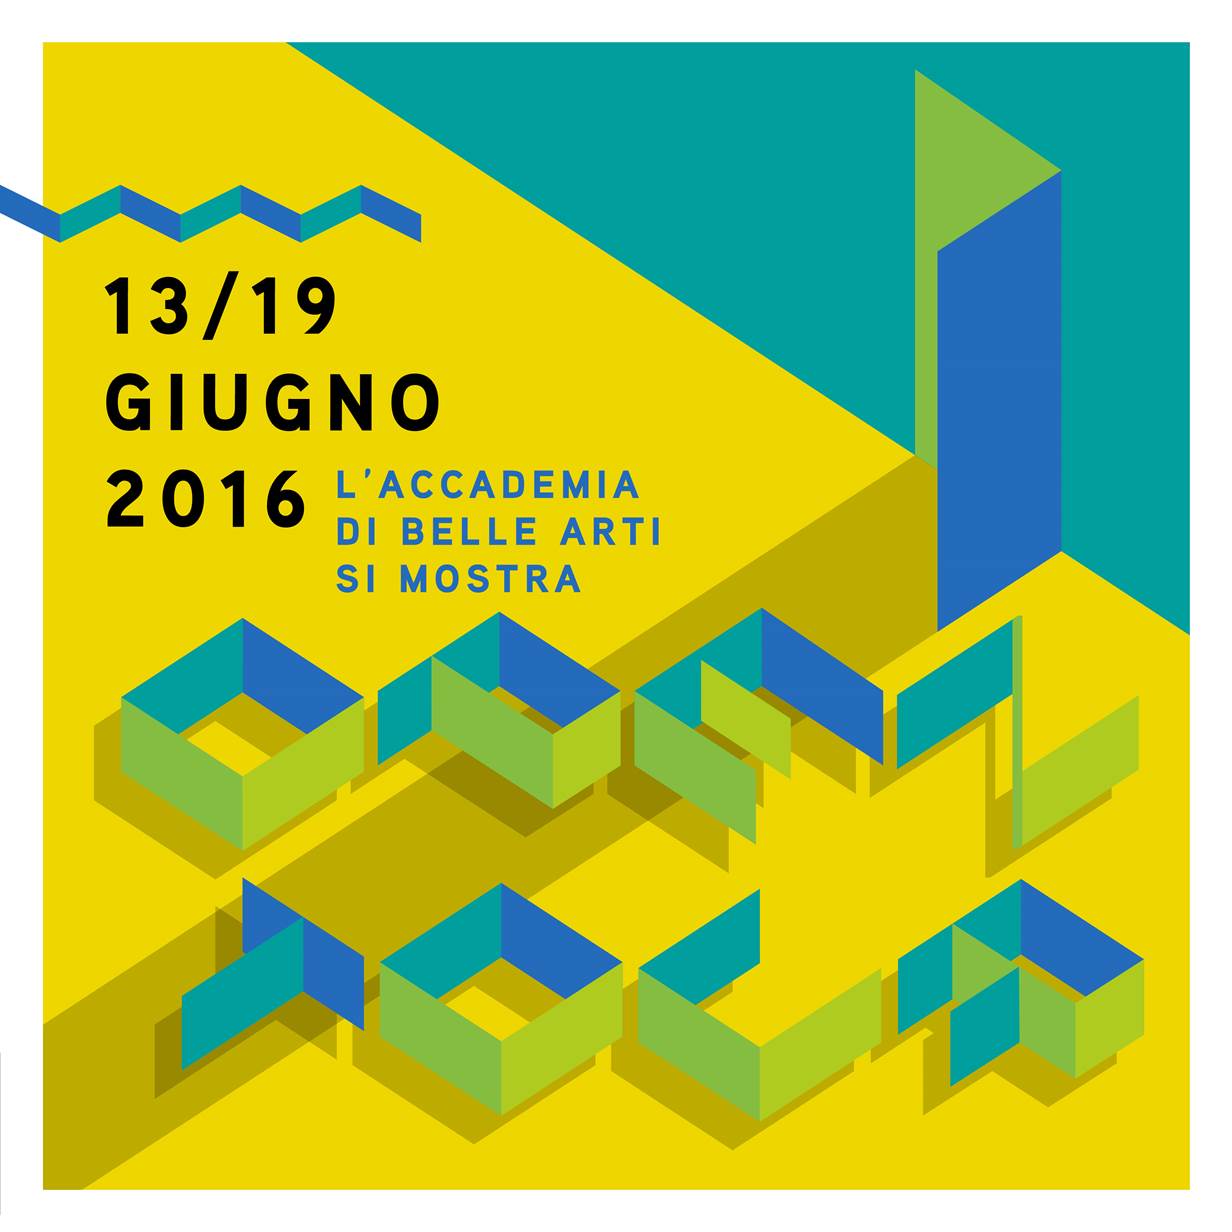 OPENTOUR 2016 - Academy of Fine Arts, Bologna - La grandezza delle mani - P420 - 